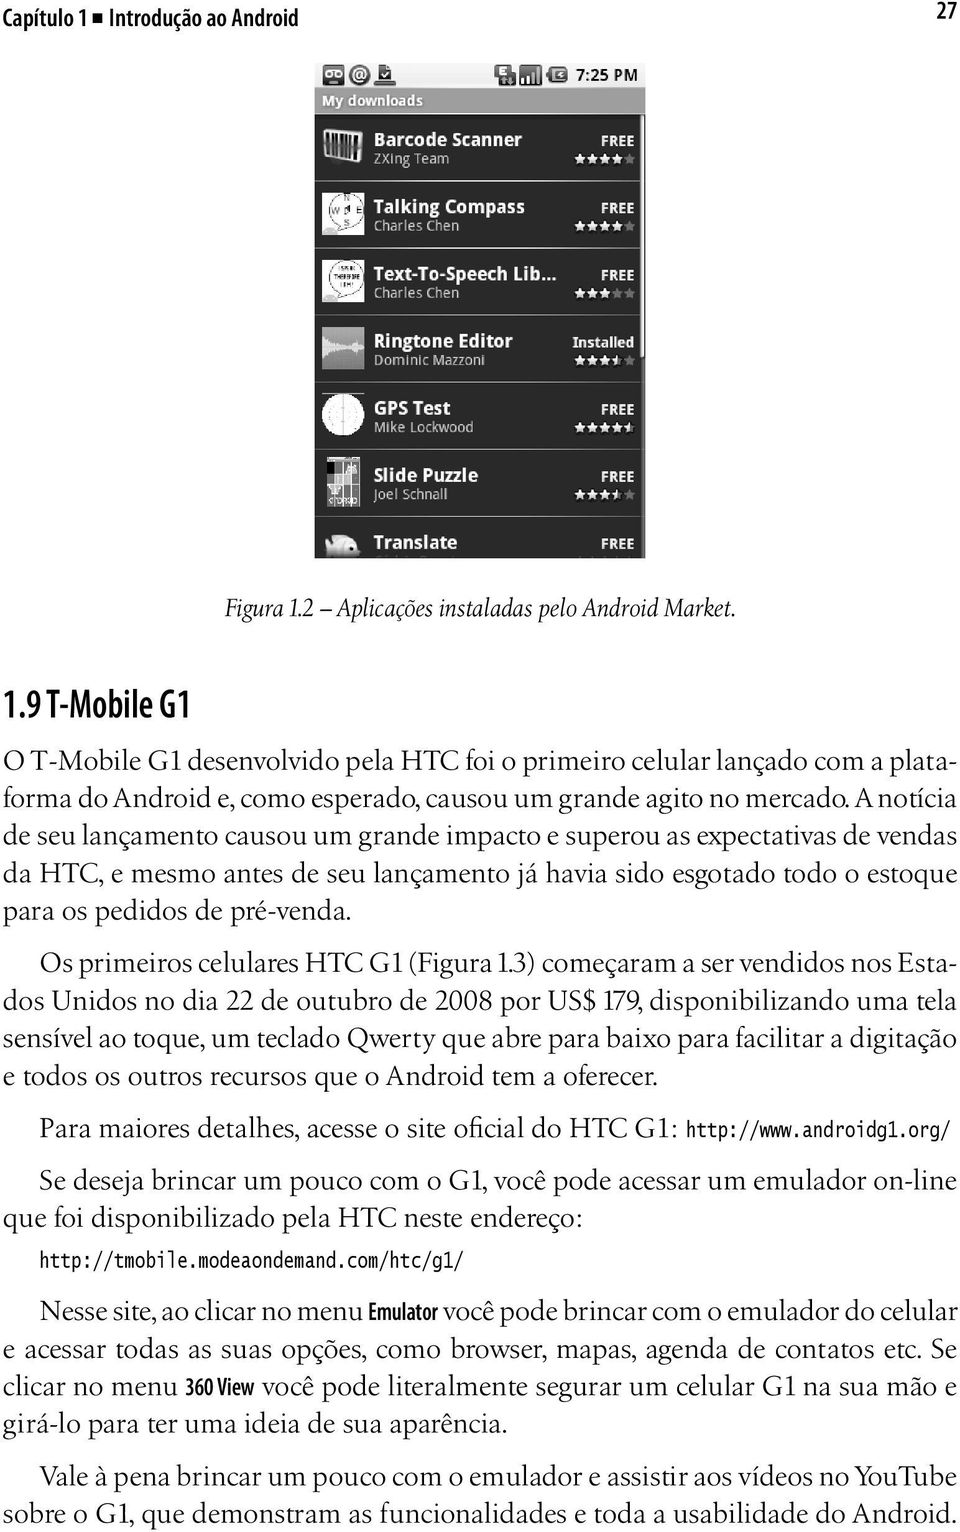 Os primeiros celulares HTC G1 (Figura 1.